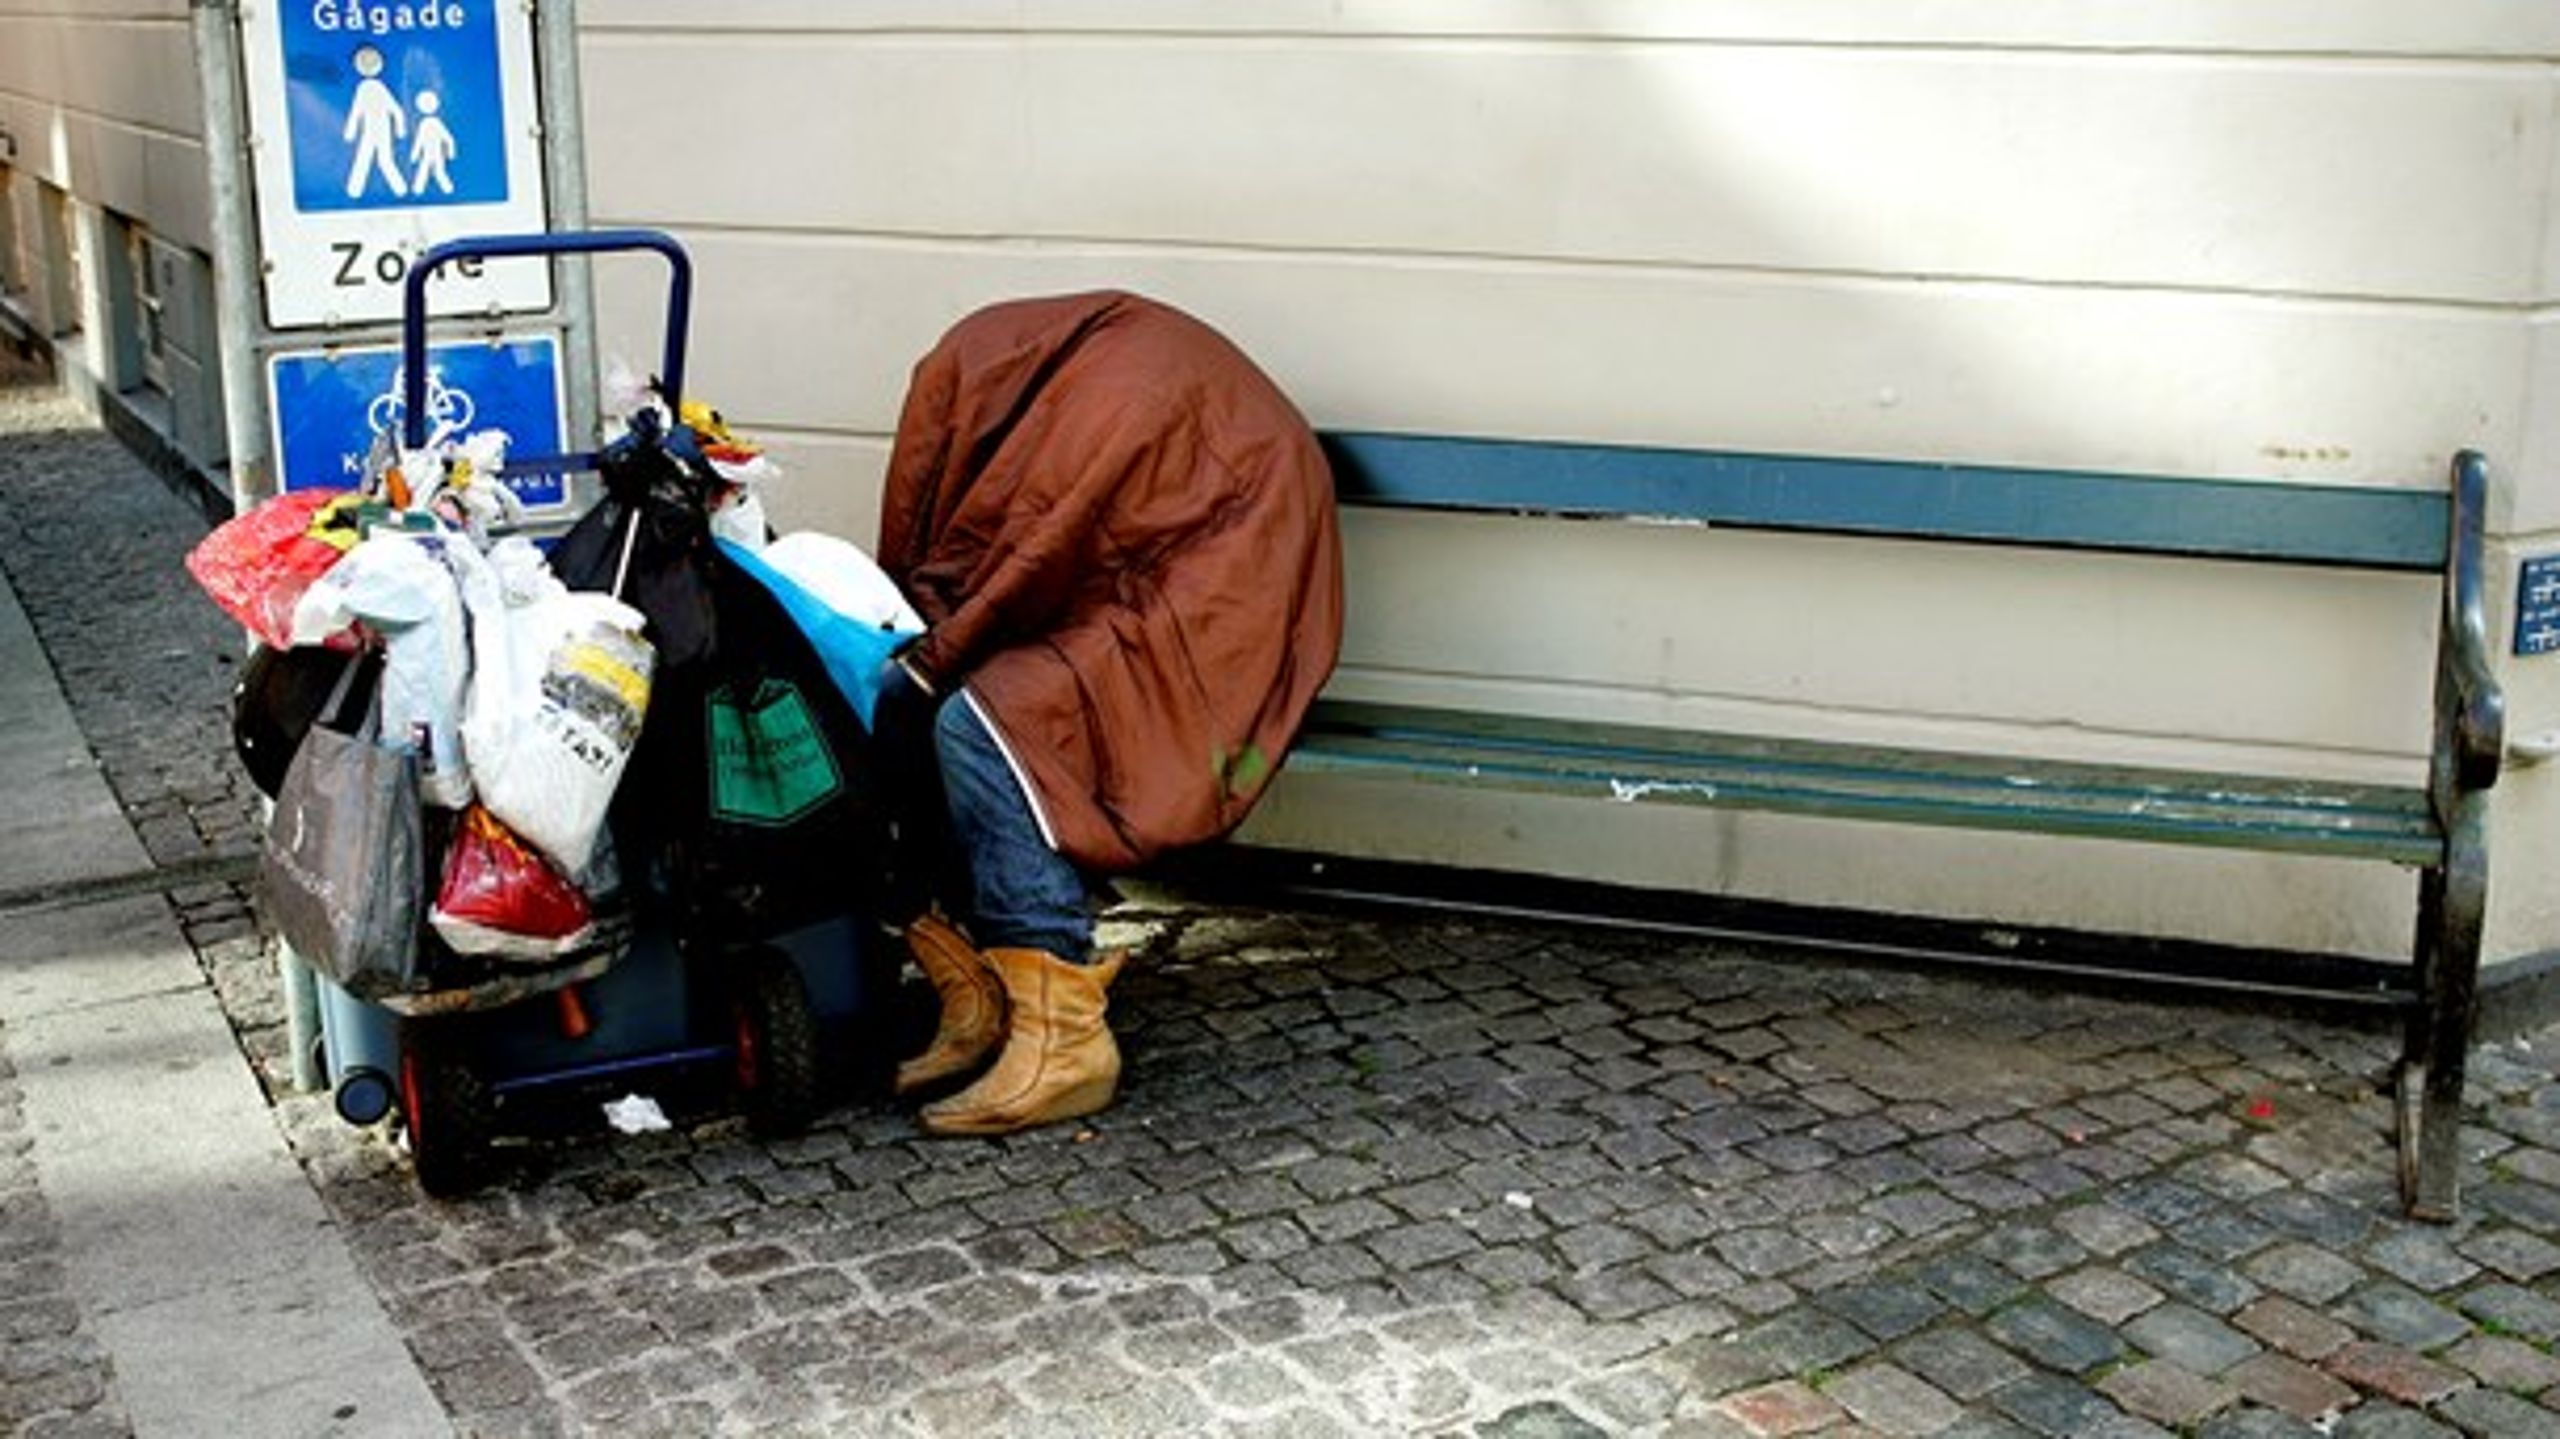 Det halter med at skabe permanente boligløsninger for hjemløse i Danmark, skriver Lars Benjaminsen.<br>